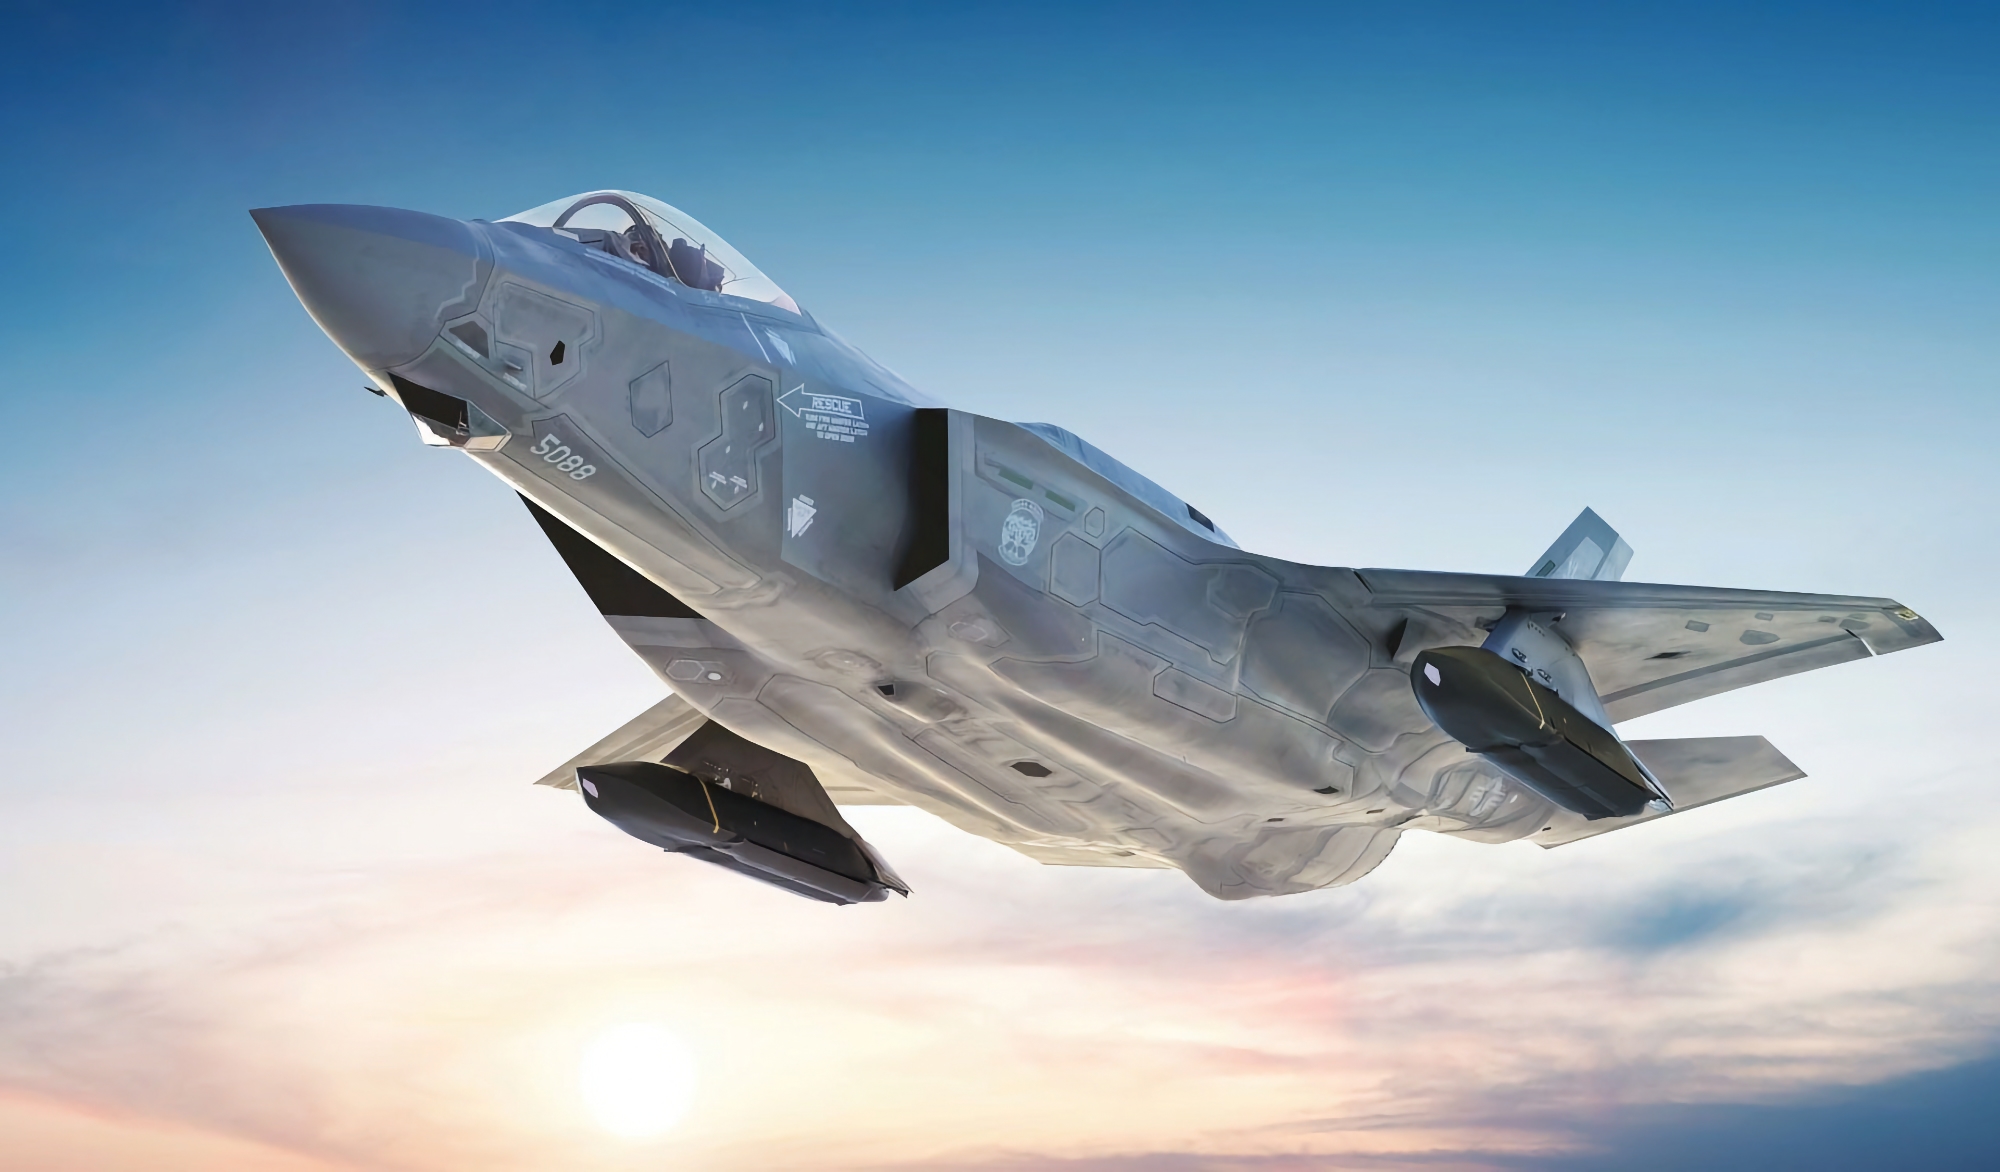 5,62 Milliarden Dollar Auftrag: Tschechische Republik unterzeichnet Vertrag über den Kauf von 24 F-35A-Kampfjets der fünften Generation